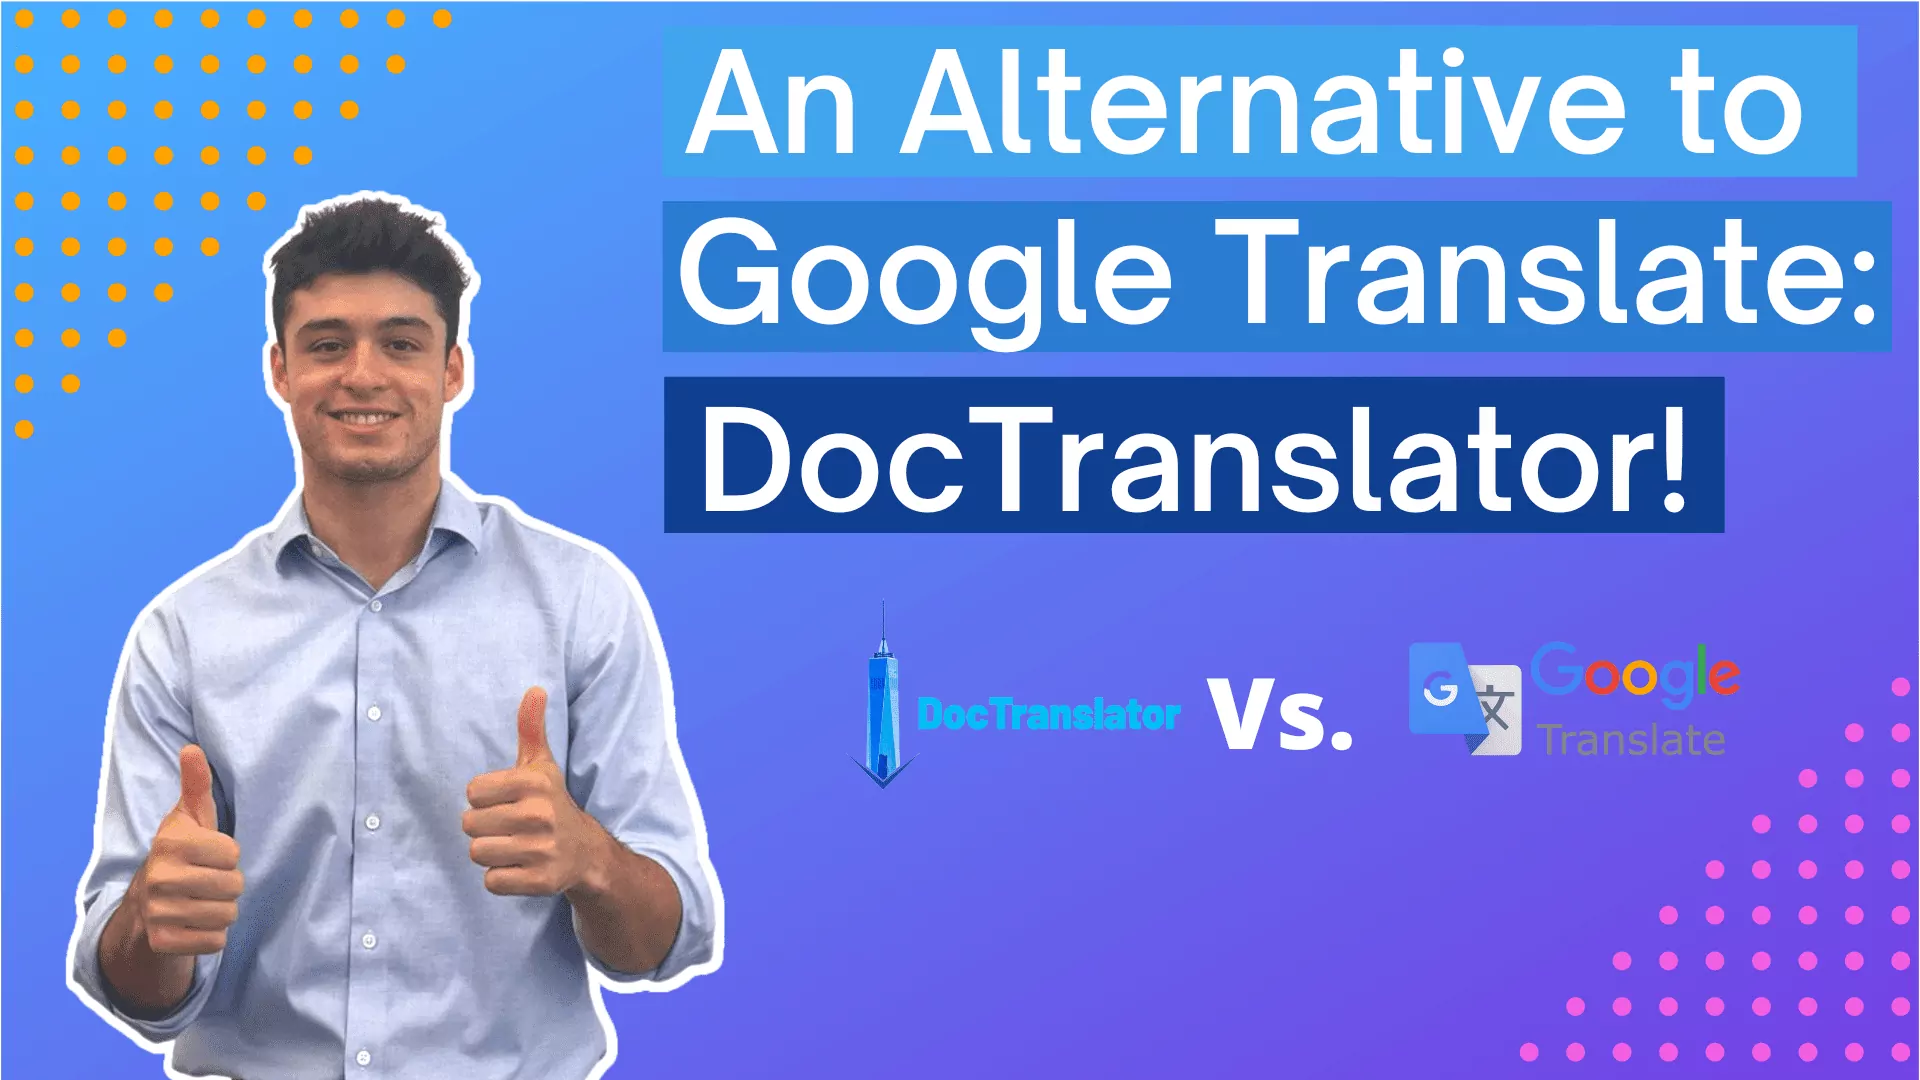 Google Translate Alternative